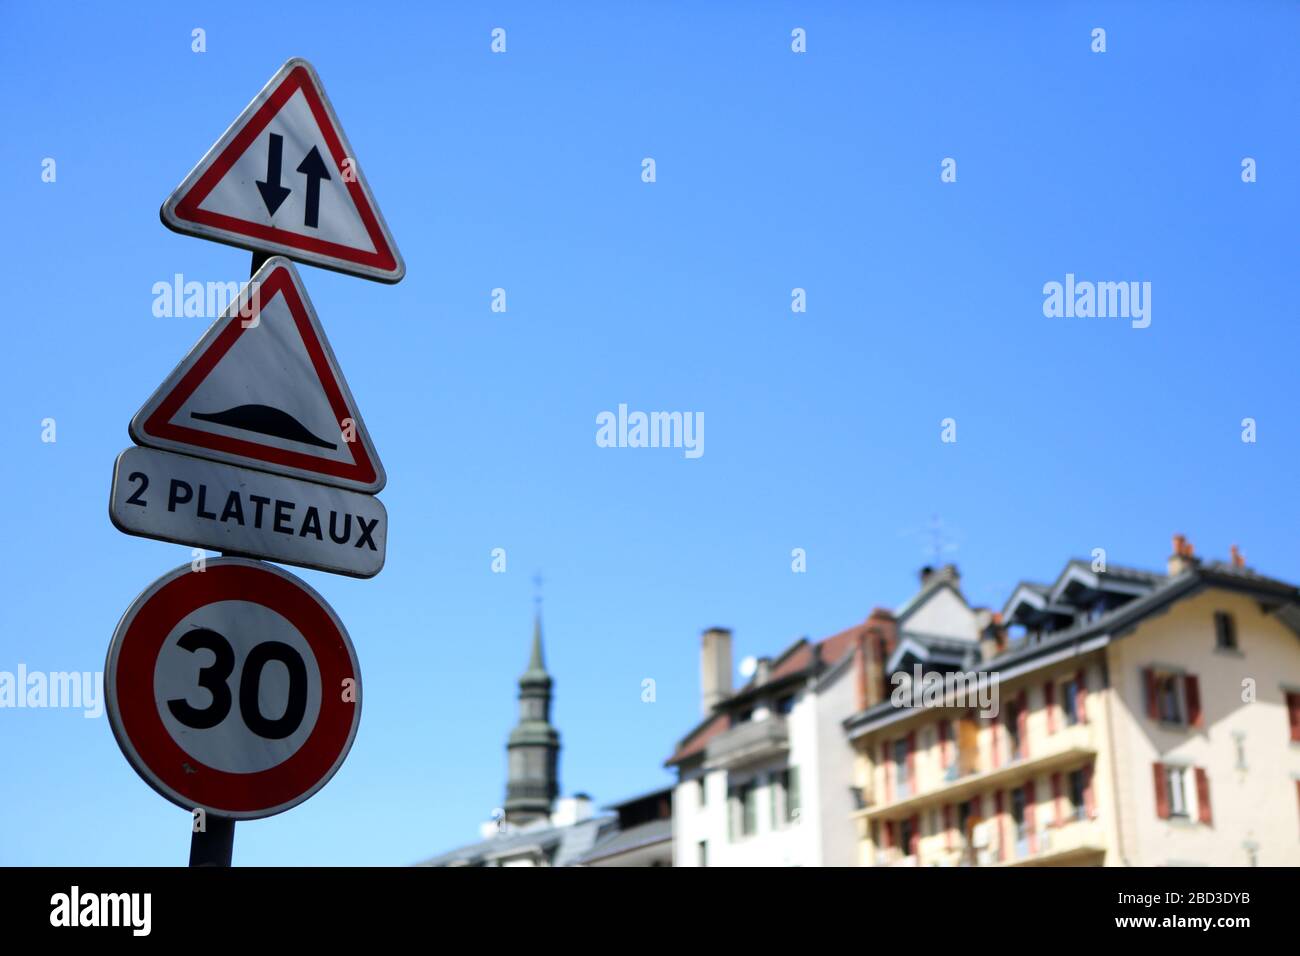 Accès dans les deux sens, dos d'âne, limitation à 30 km/h. Panneaux. Signalisation routière. Saint-Gervais-les-Bains. Haute-Savoie. France. Stock Photo